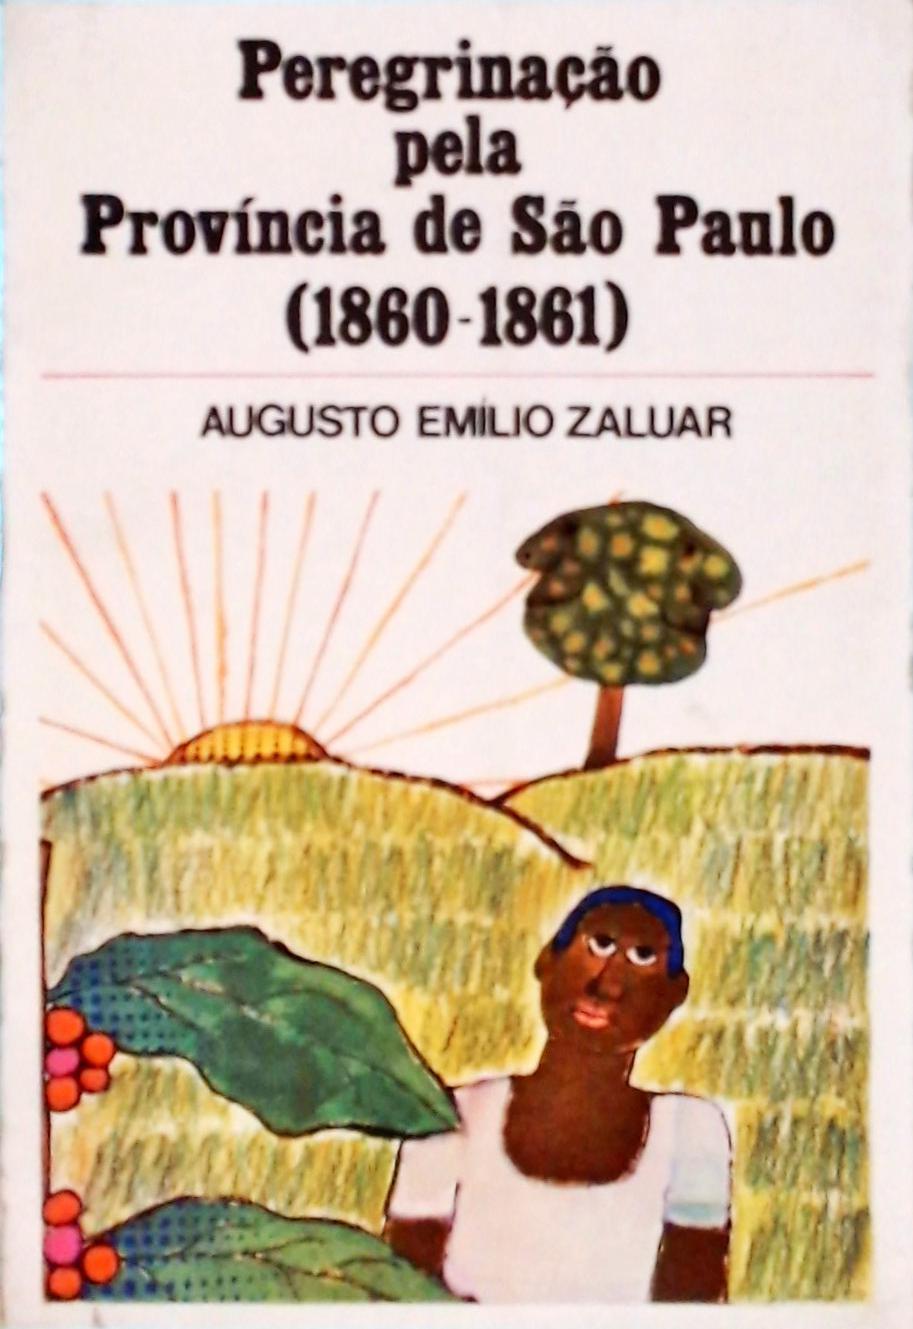 Peregrinação pela Província de São Paulo (1860-1861)